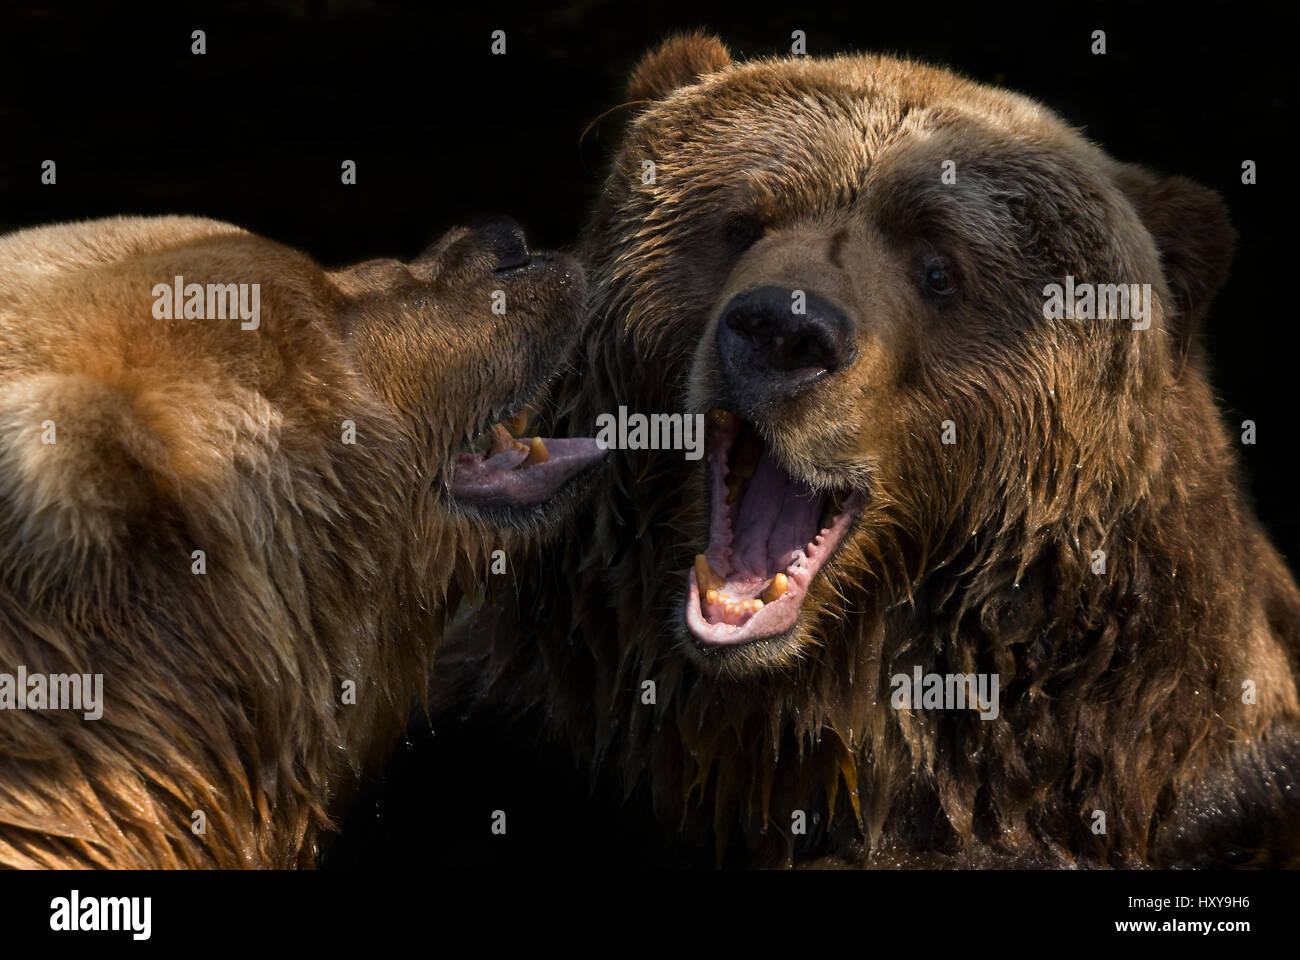 Zwei Kodiak / Alaskan Braunbären (Ursus Arctos Middendorffi) kämpfen, in Gefangenschaft. Stockfoto